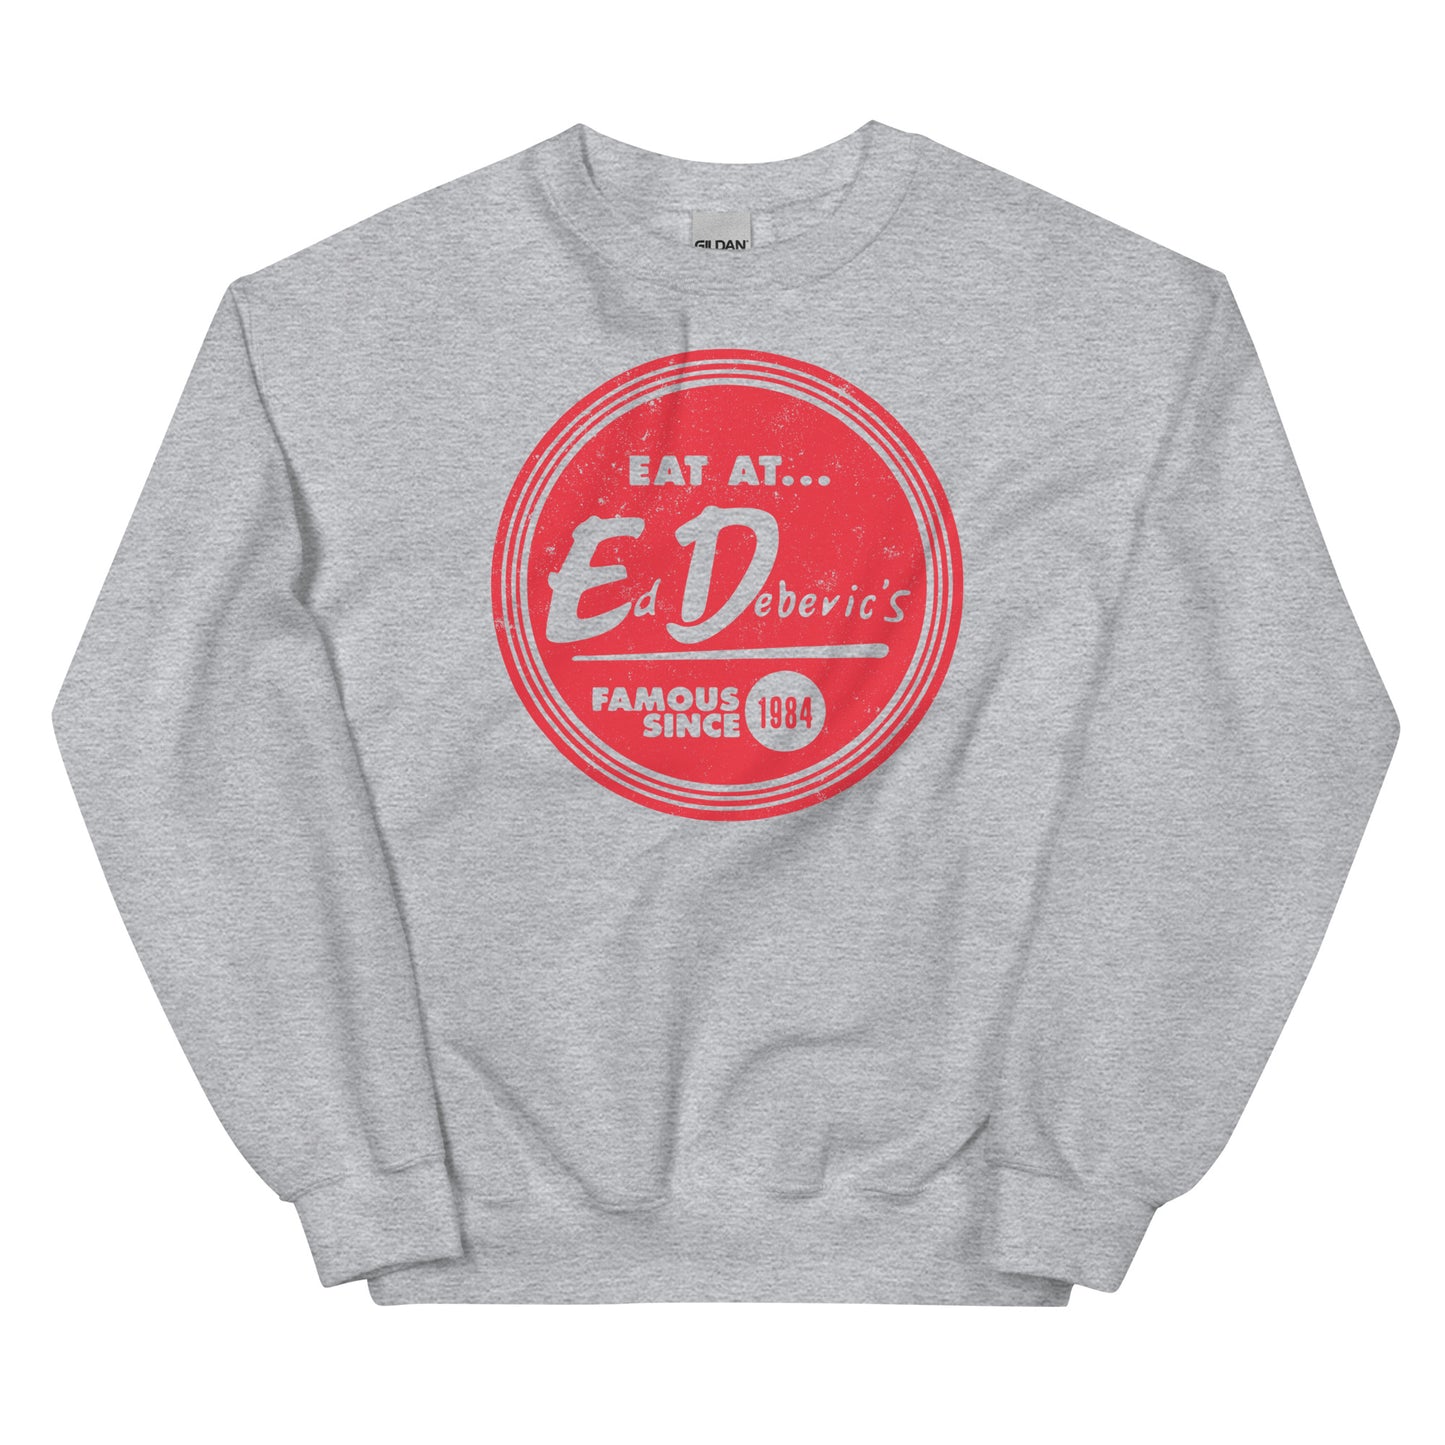 Ed Debevic's Sweatshirt